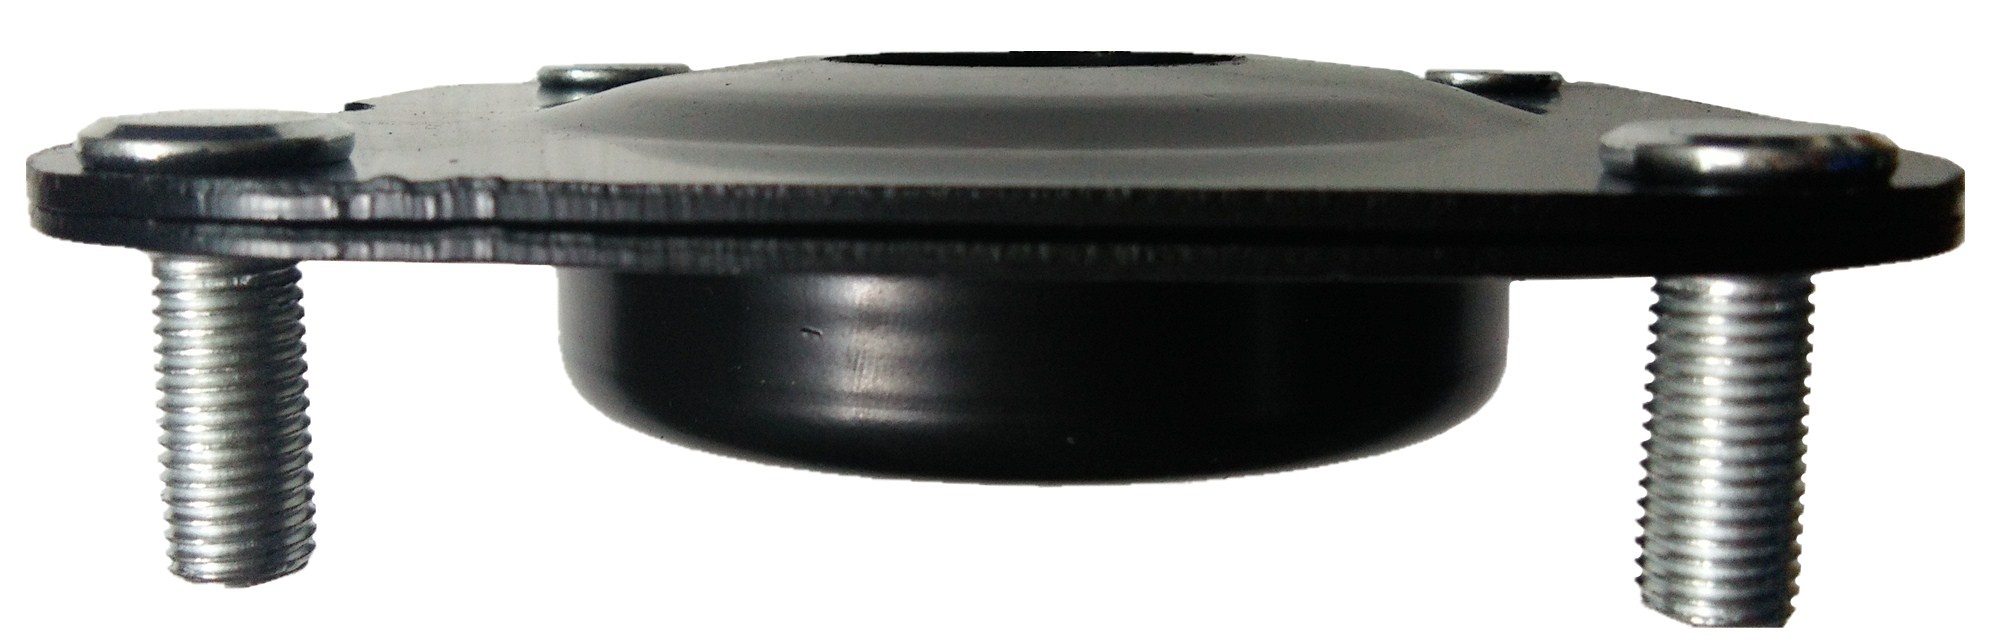 马自达 橡胶减震器 CB01-34-380